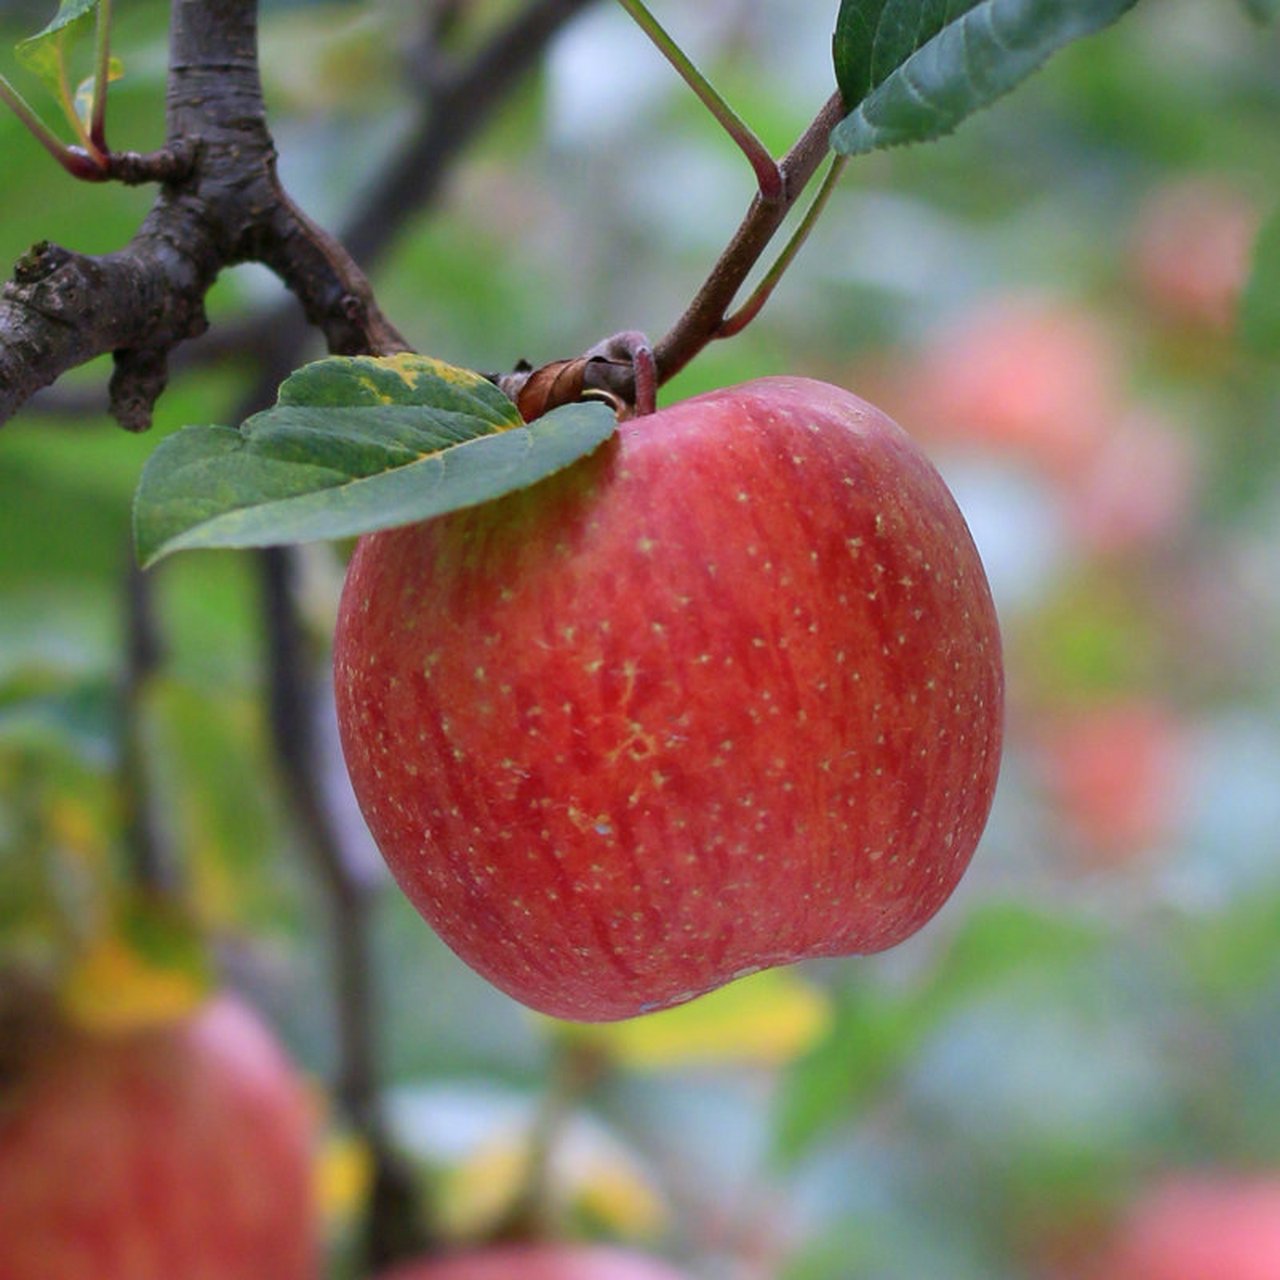 【现价】488 元 每天水果 汉源苹果,高山种植,量少,果